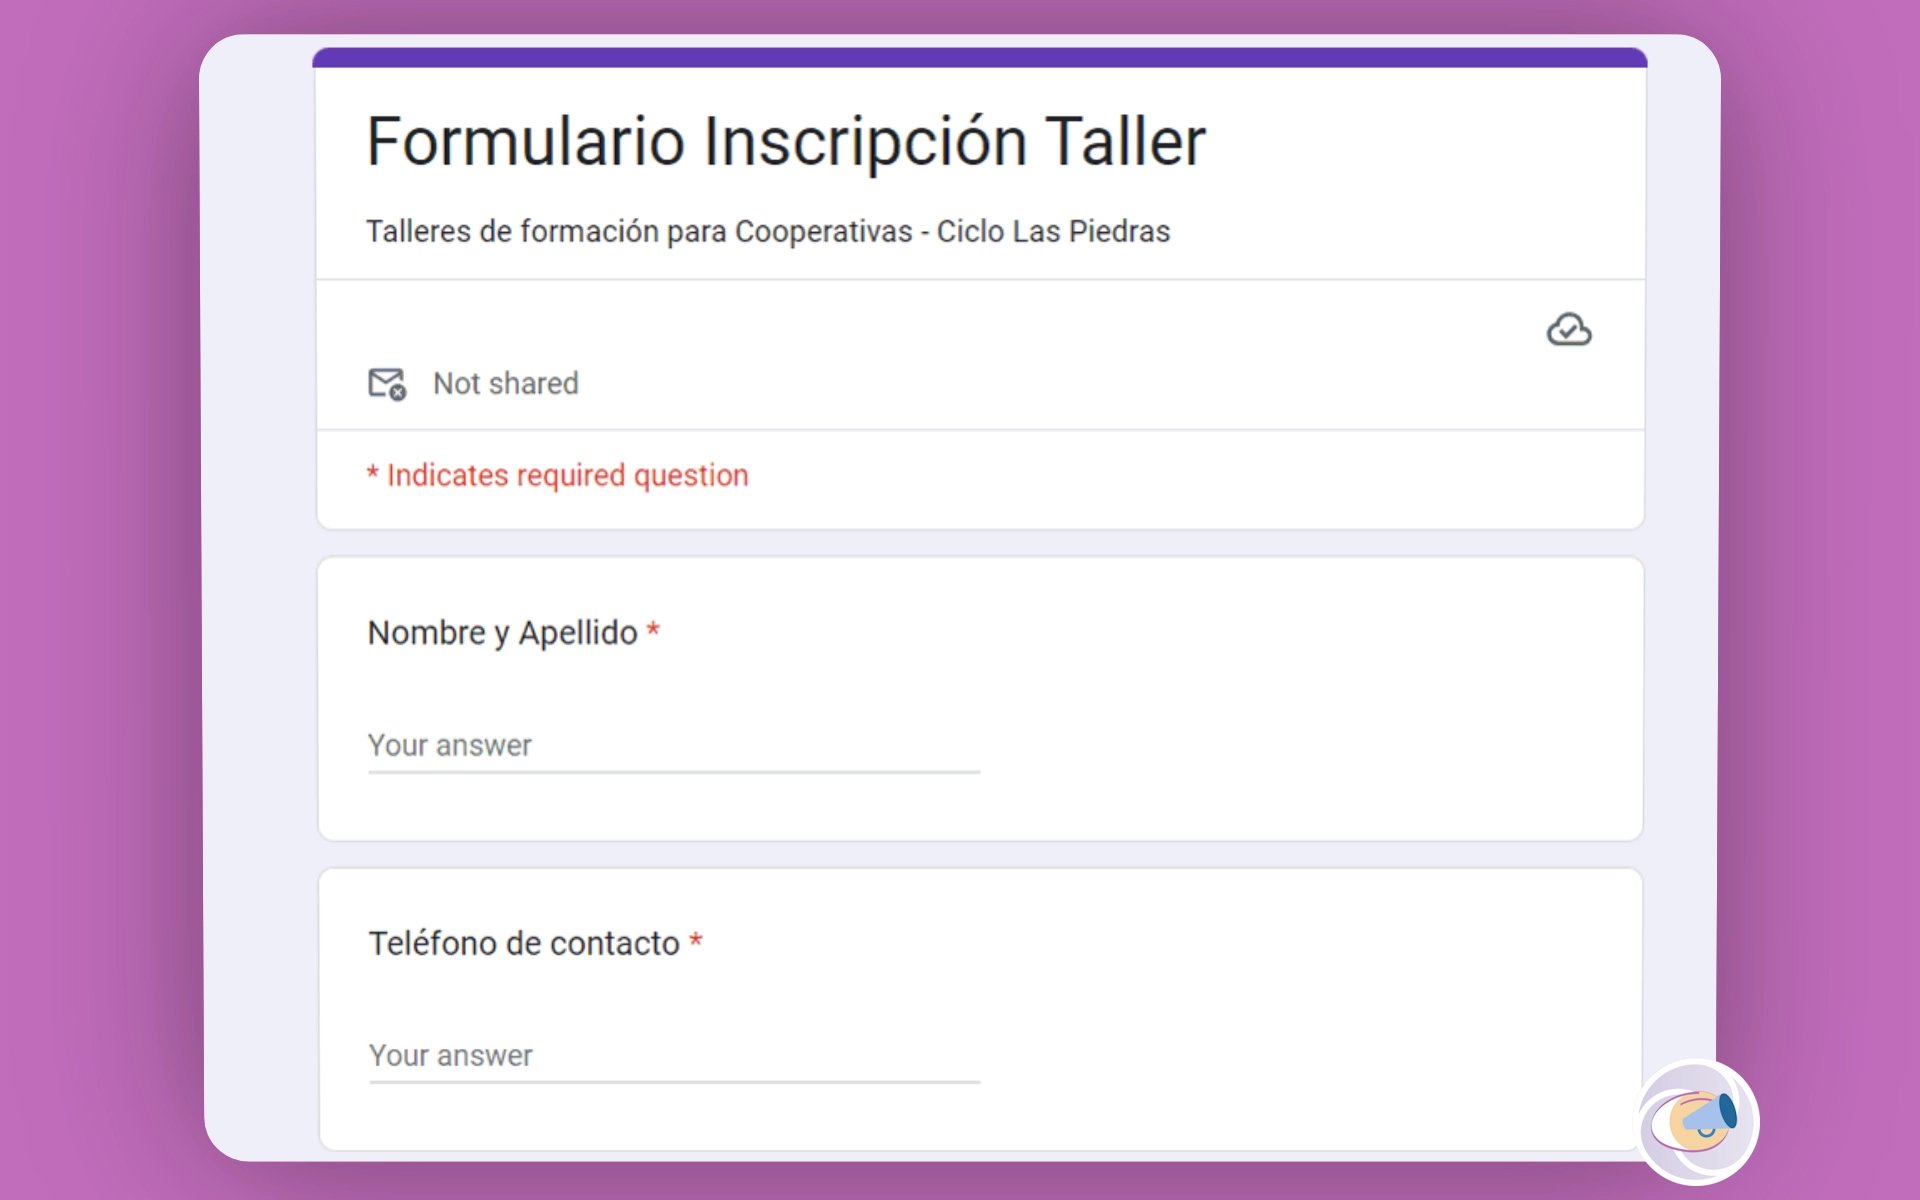 Formulario Inscripción Taller de formación para Cooperativas - Ciclo Las Piedras.